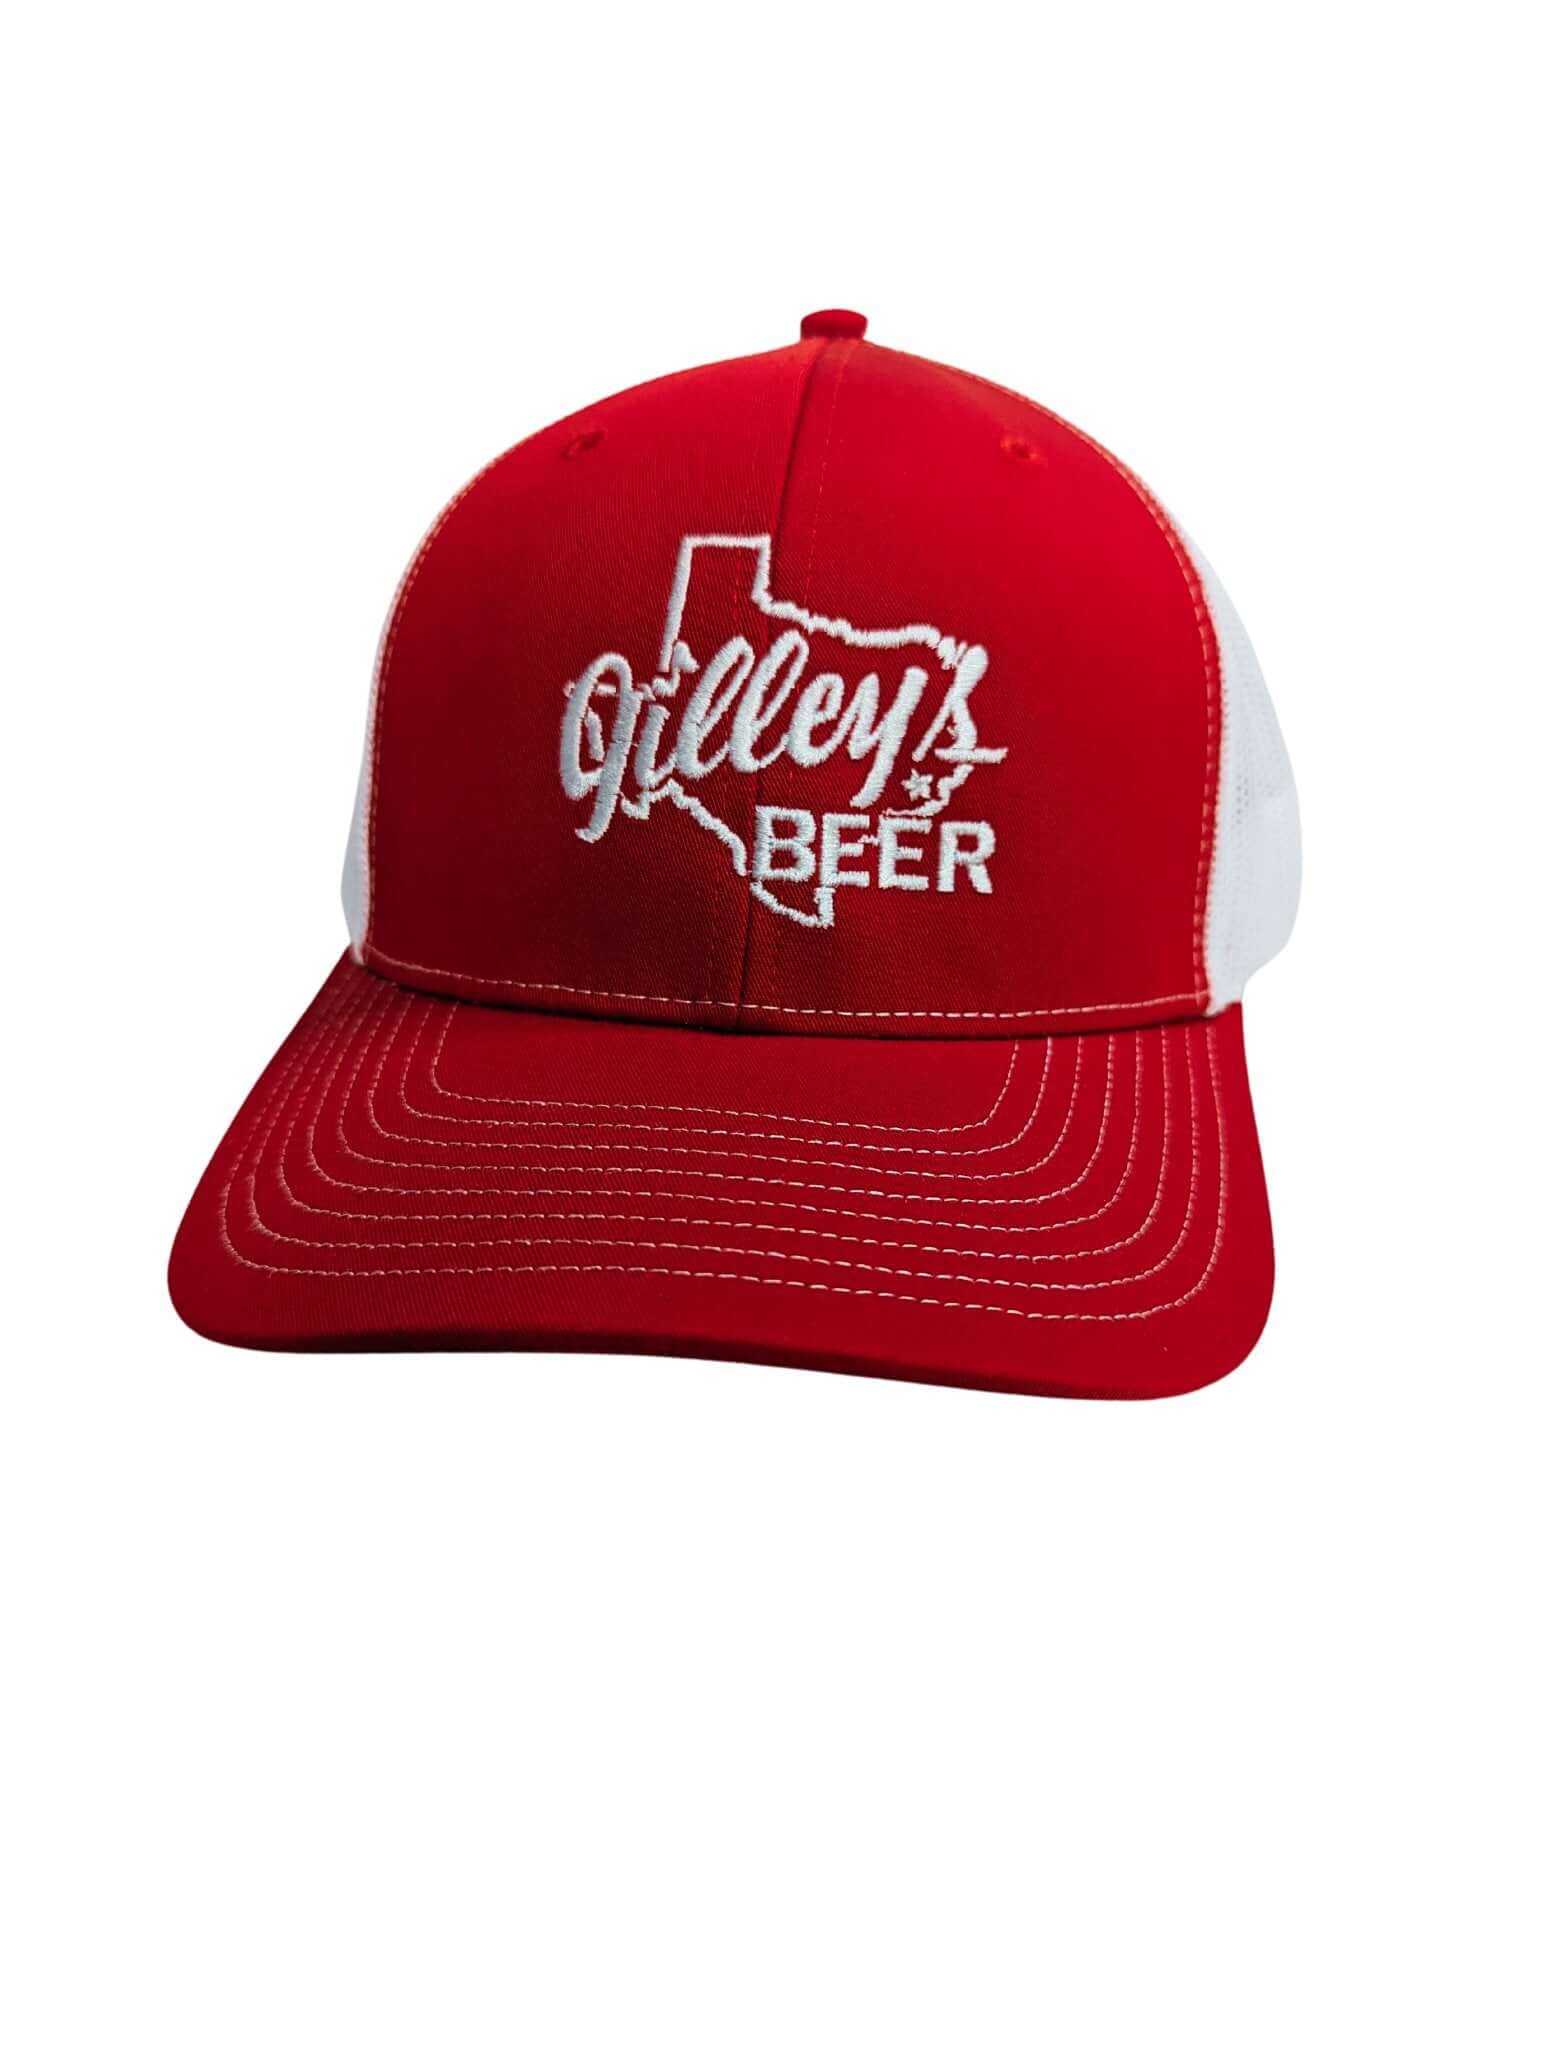 Gilley's Beer Red Trucker Cap - Gilley's Food & Beverage